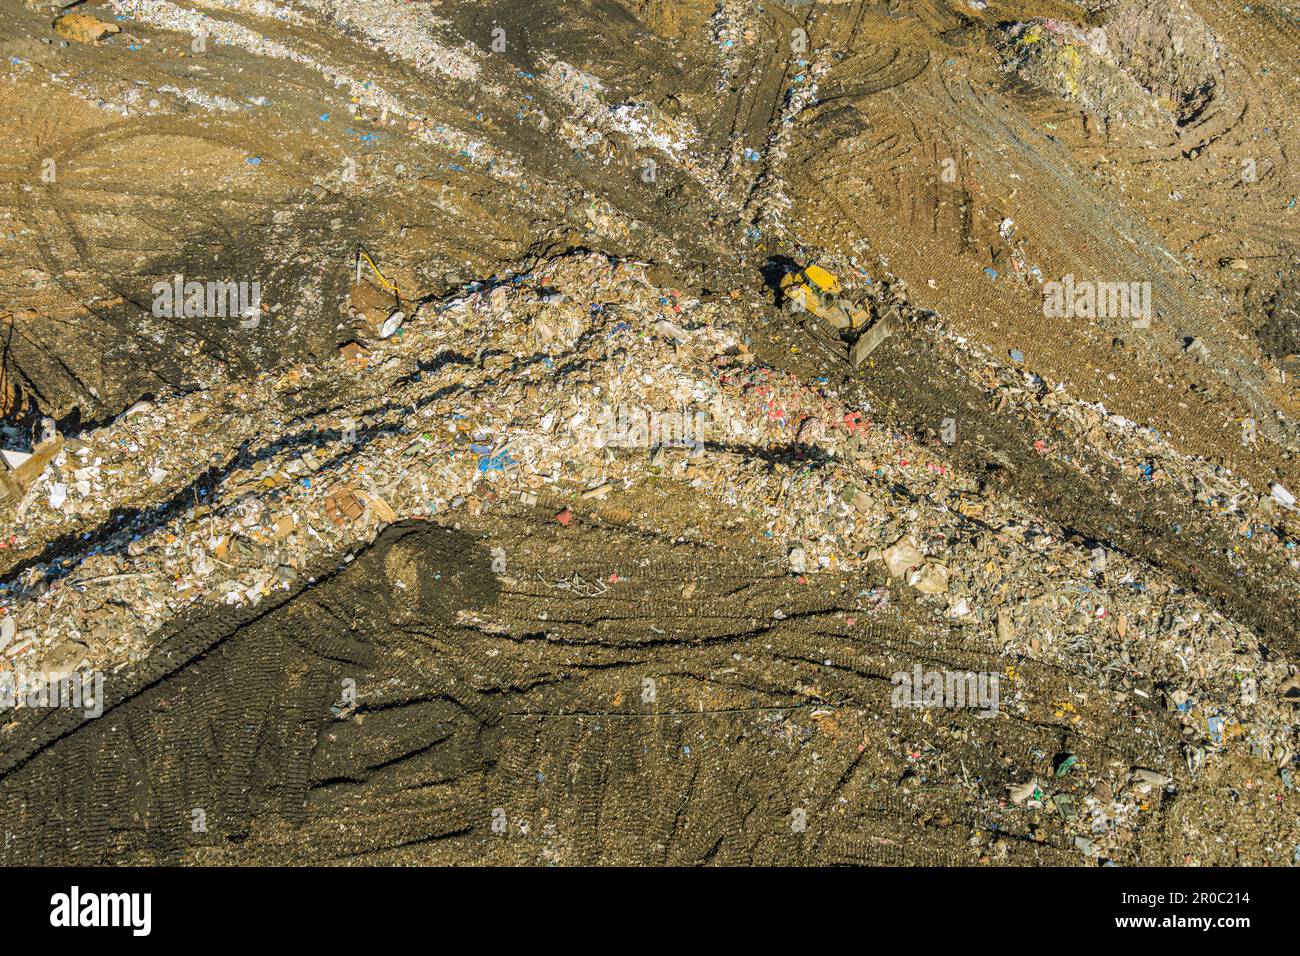 Vue aérienne du site municipal de traitement des déchets, Pennsylvanie, États-Unis Banque D'Images